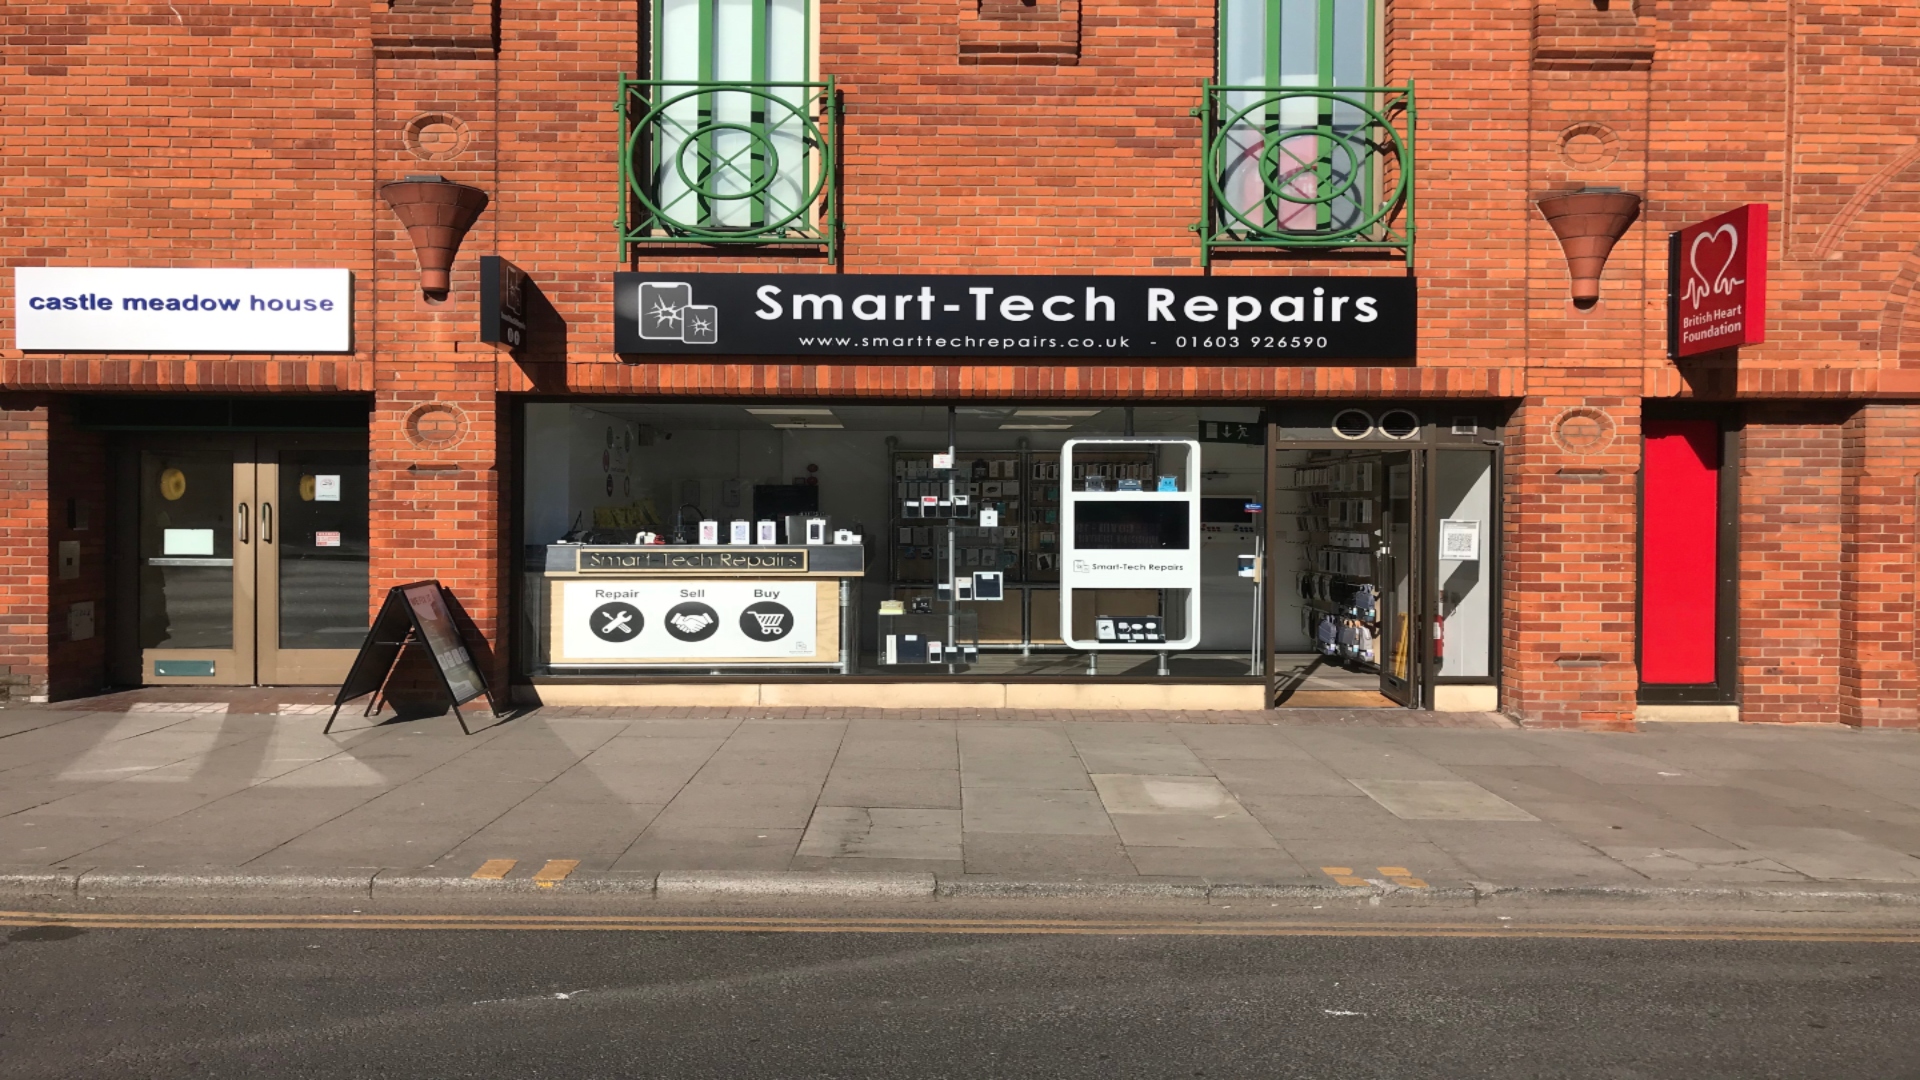 Mobile Phone Repairs In Norwich, iPhone Screen repairs near me